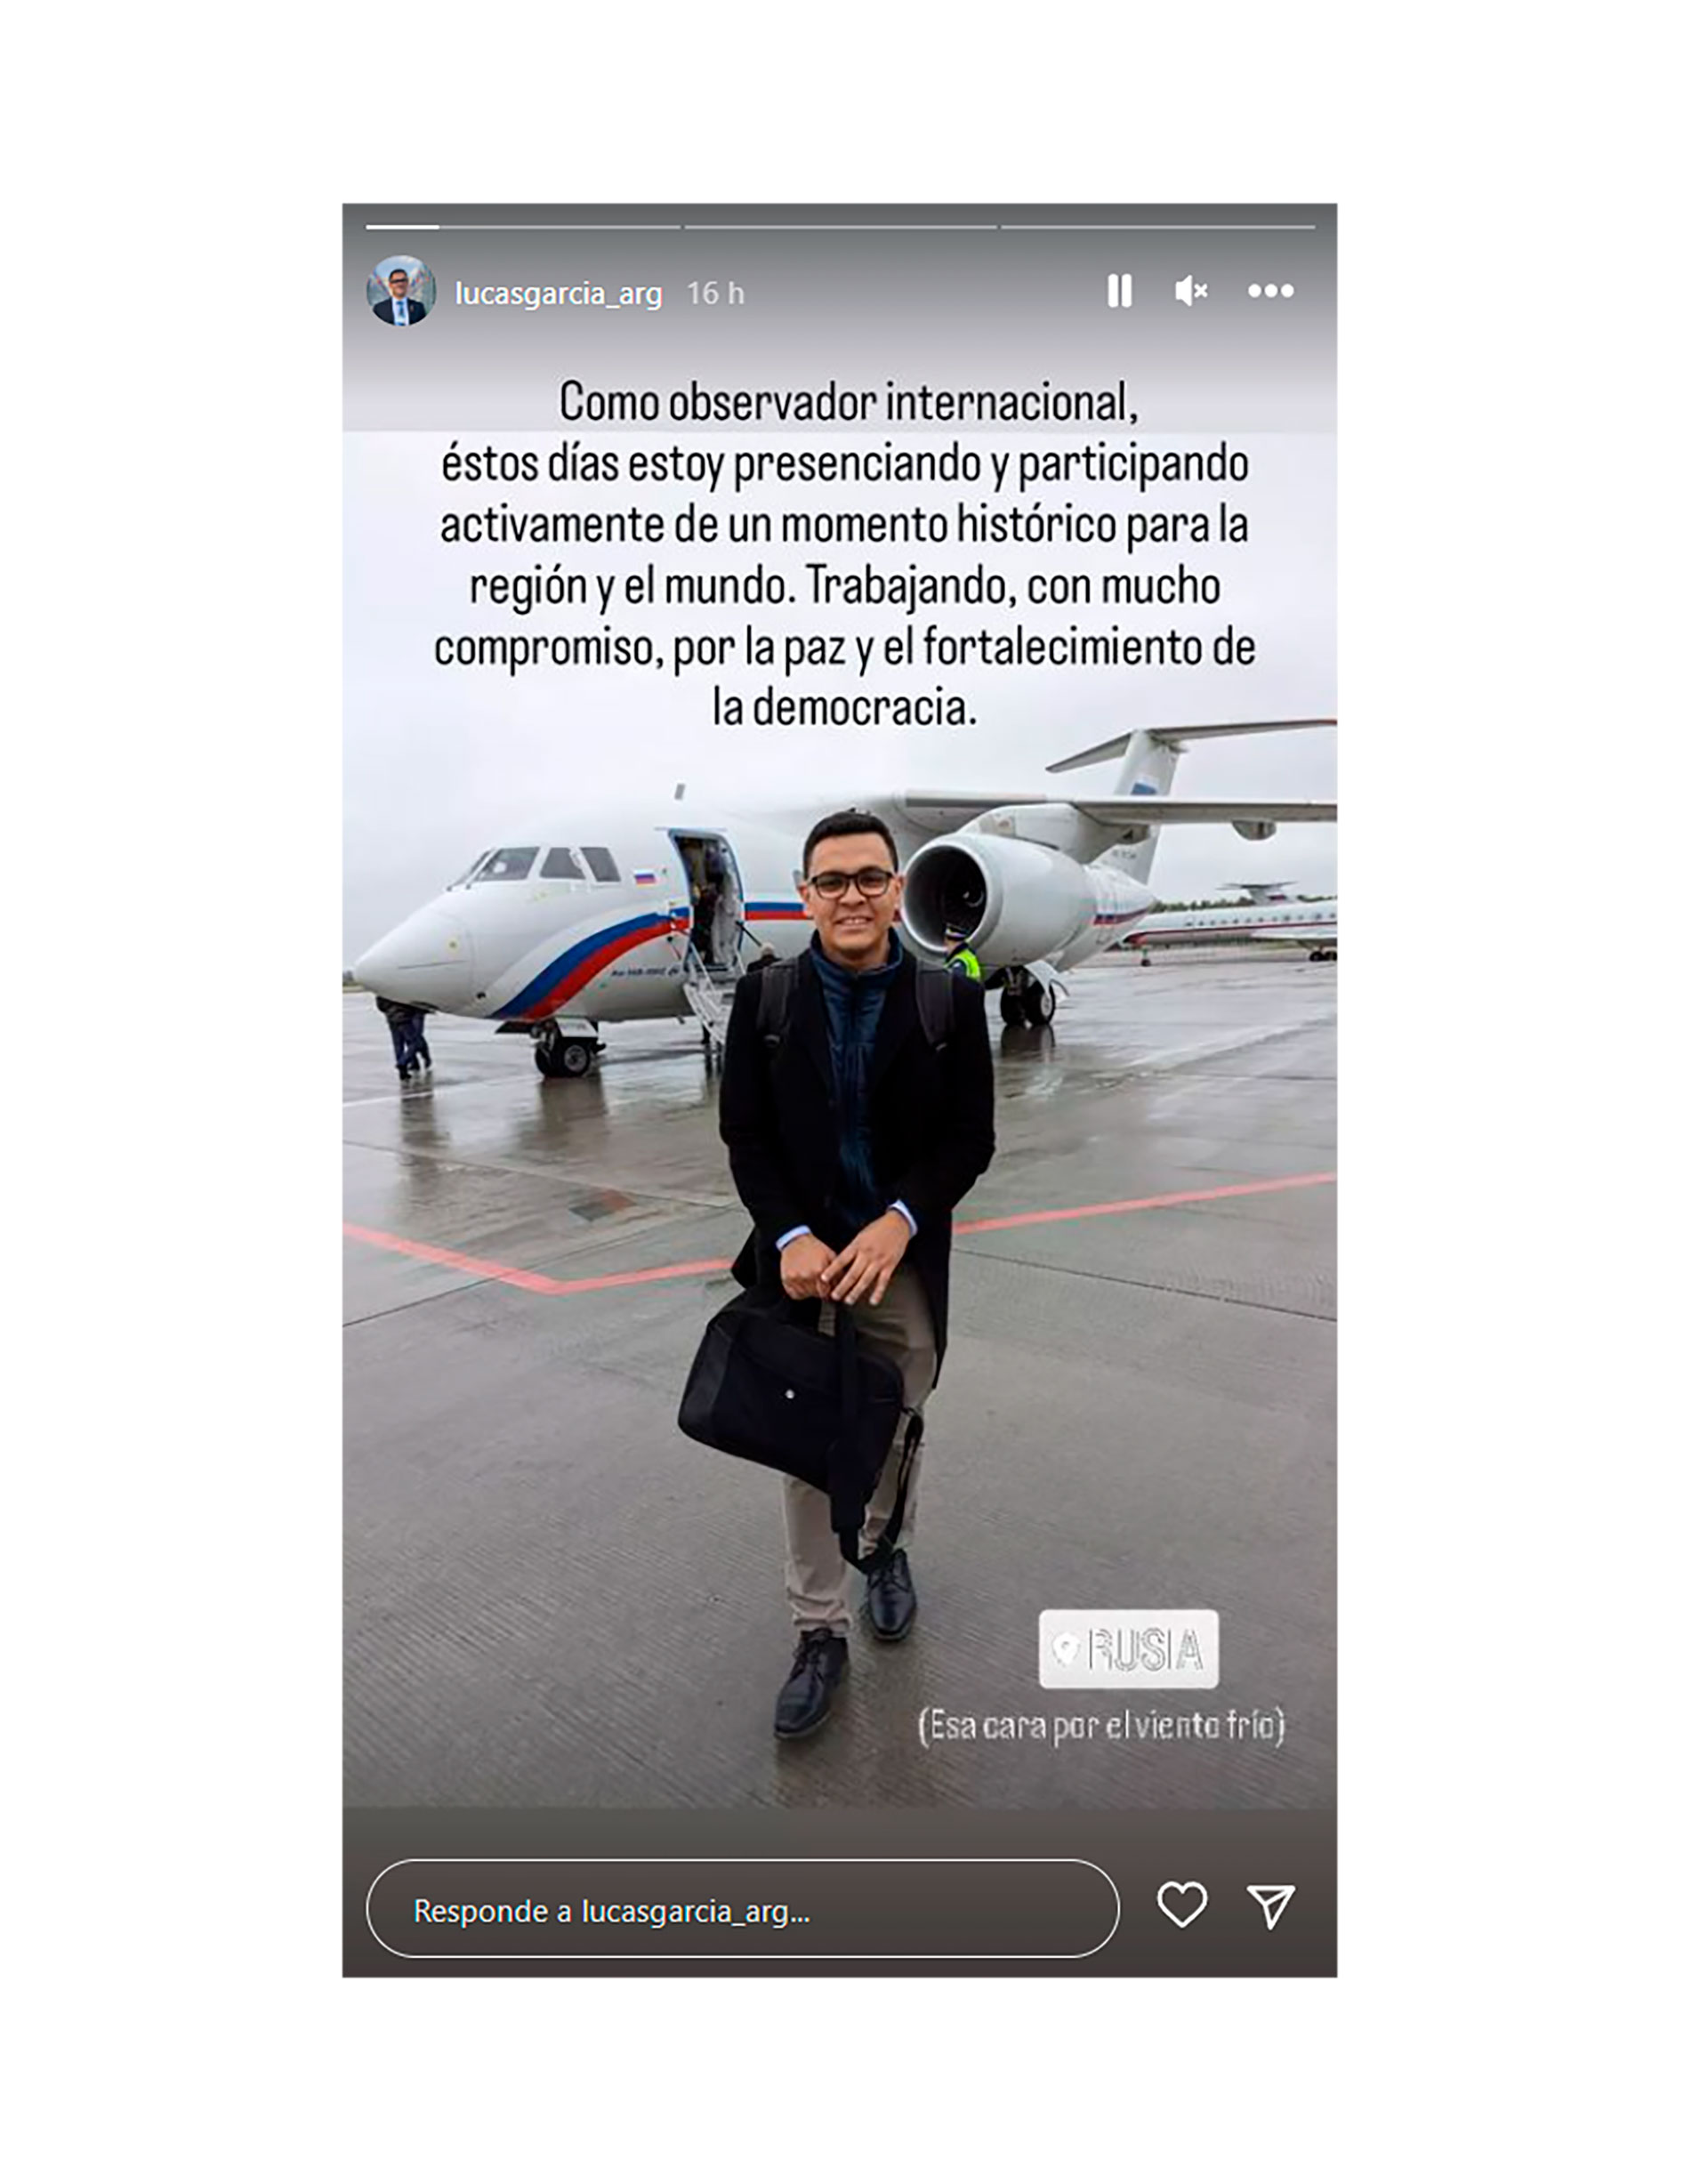 Lucas García al llegar a Rusia, según publicó en su cuenta de Instagram (@lucasgarcia_arg)